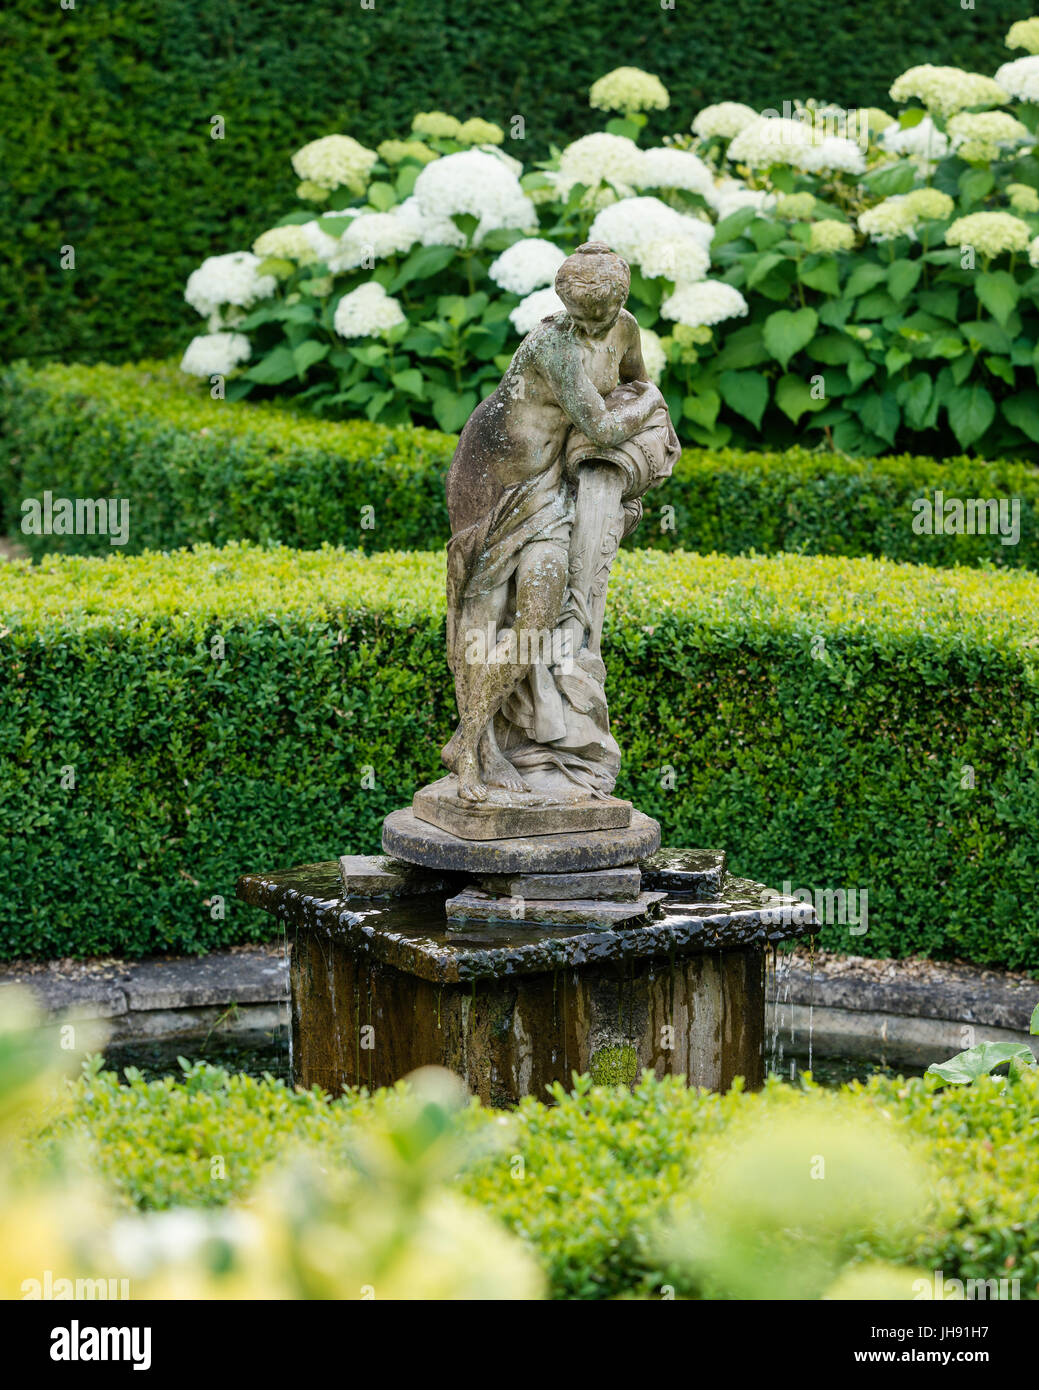 Sculpture of woman in garden Stock Photo